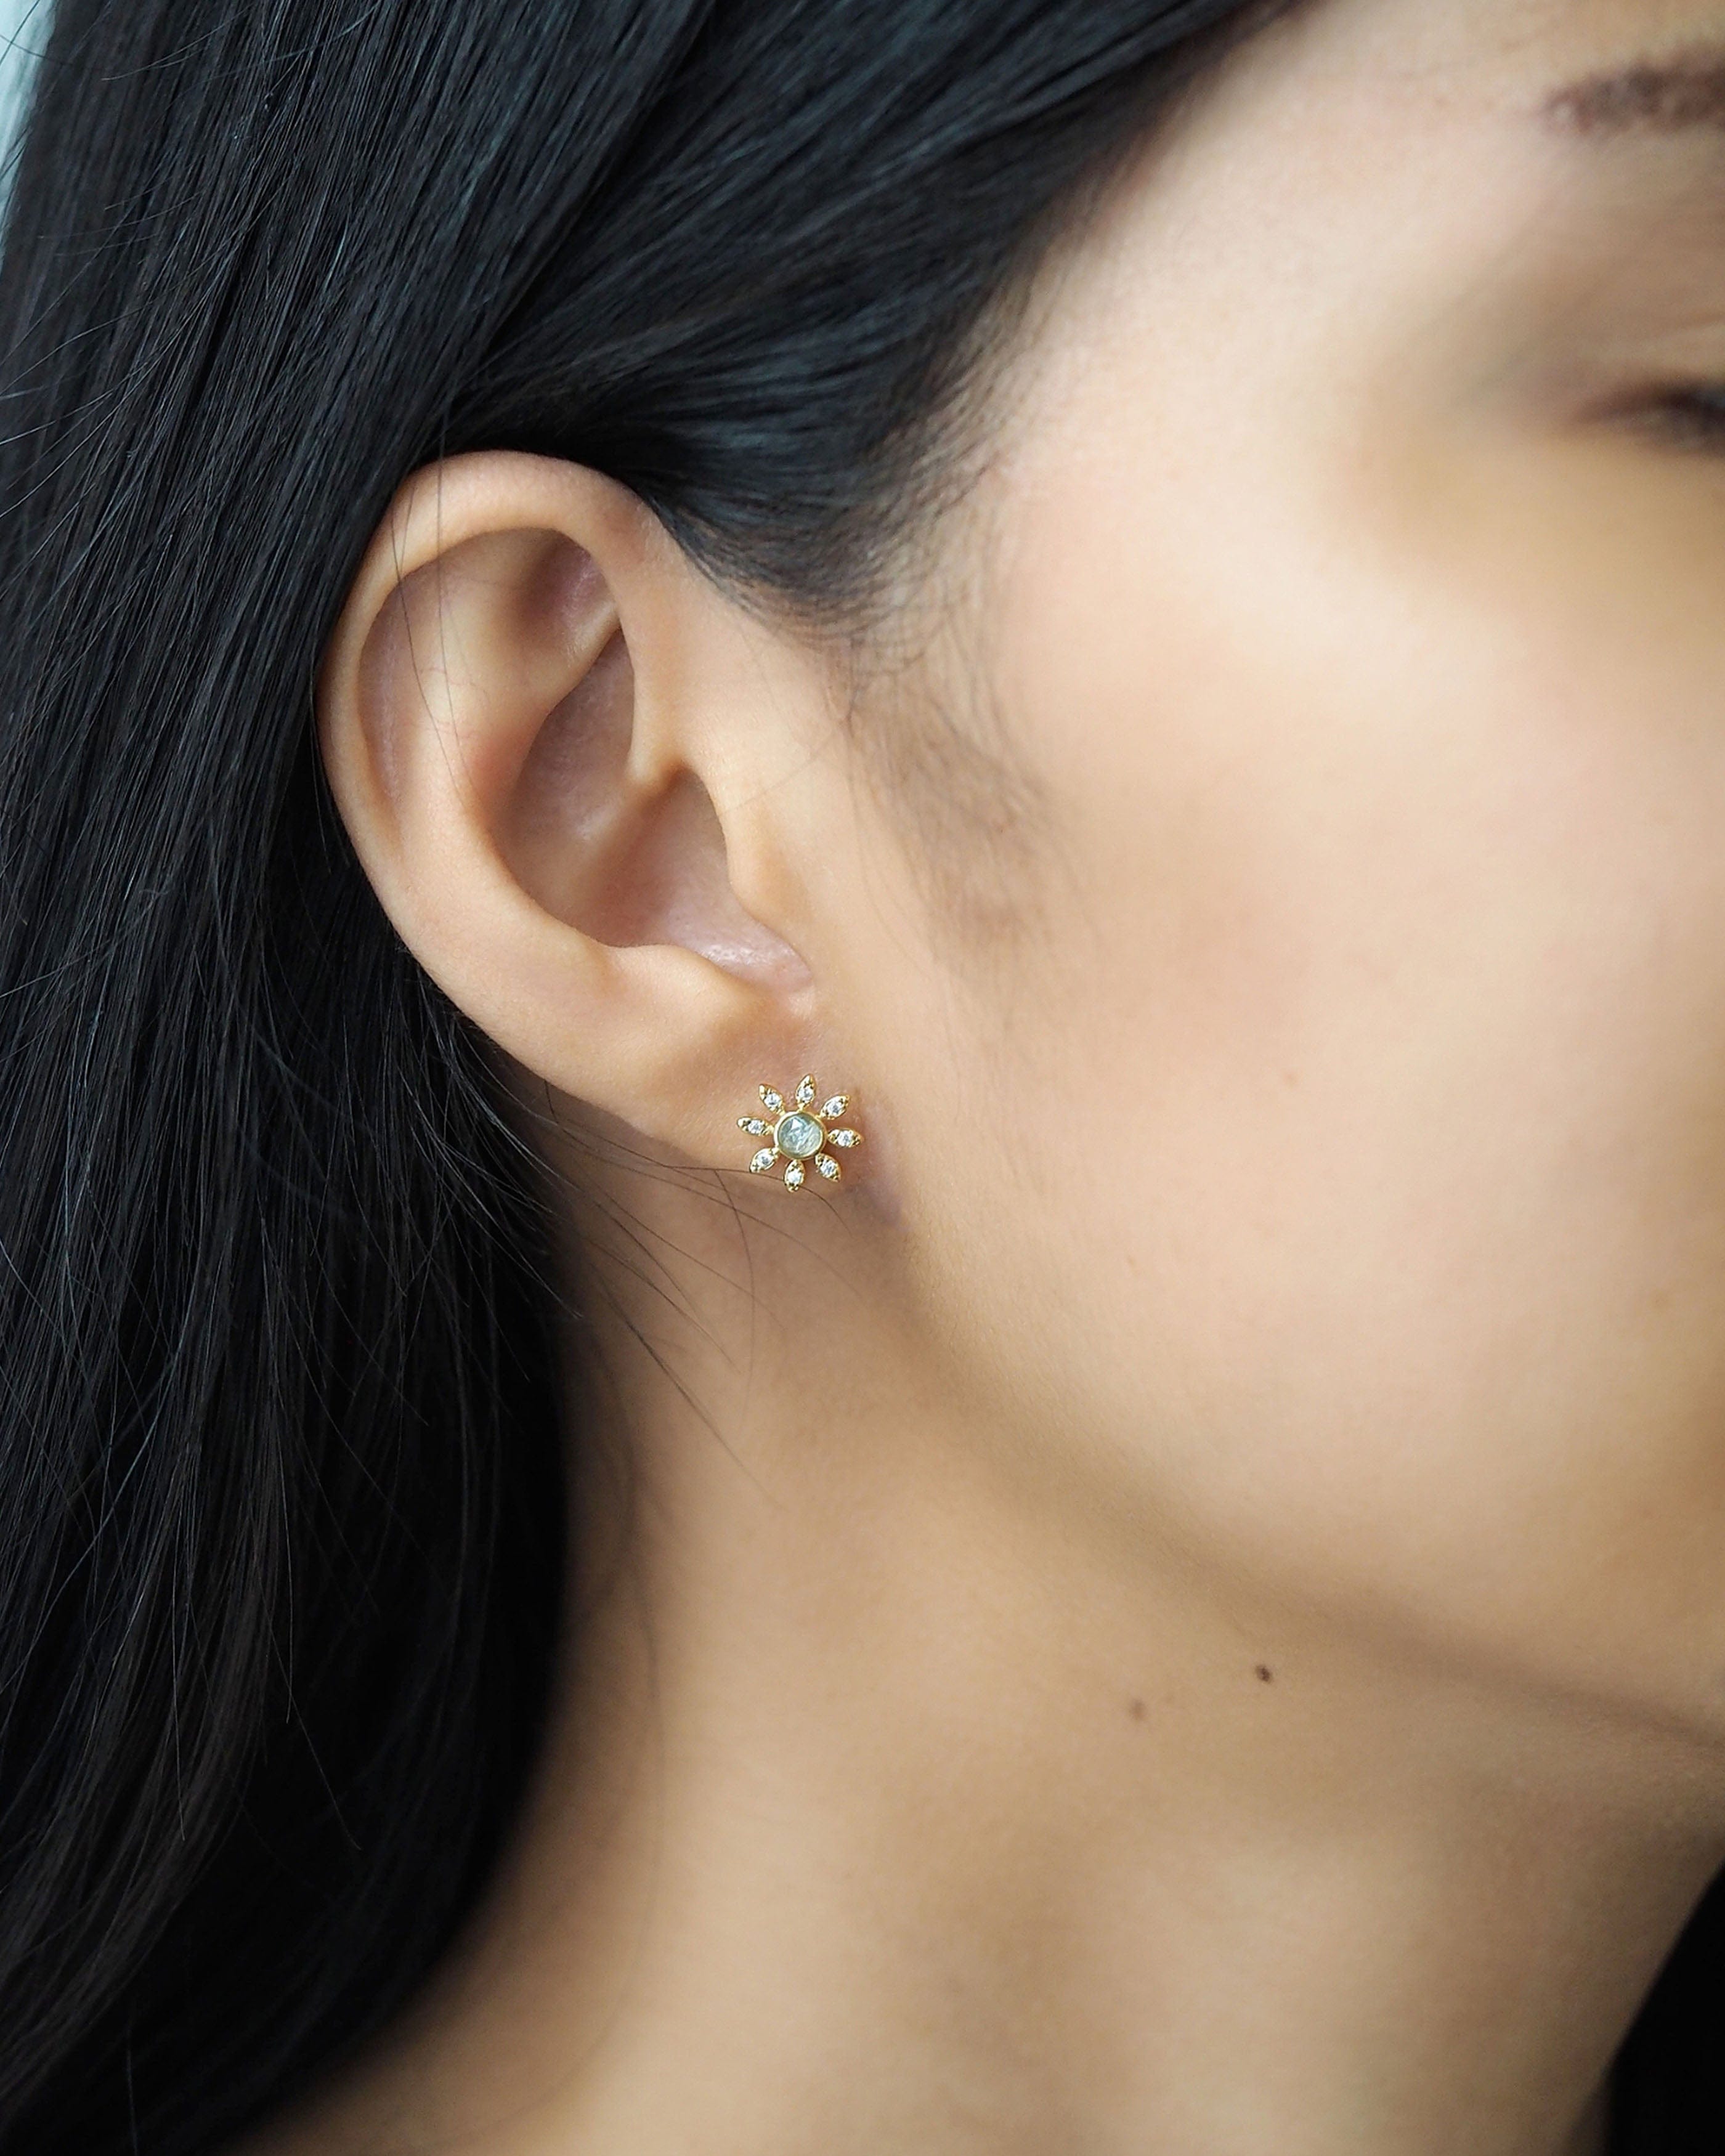 TAI JEWELRY Earrings Rock Crystal Flower Stud